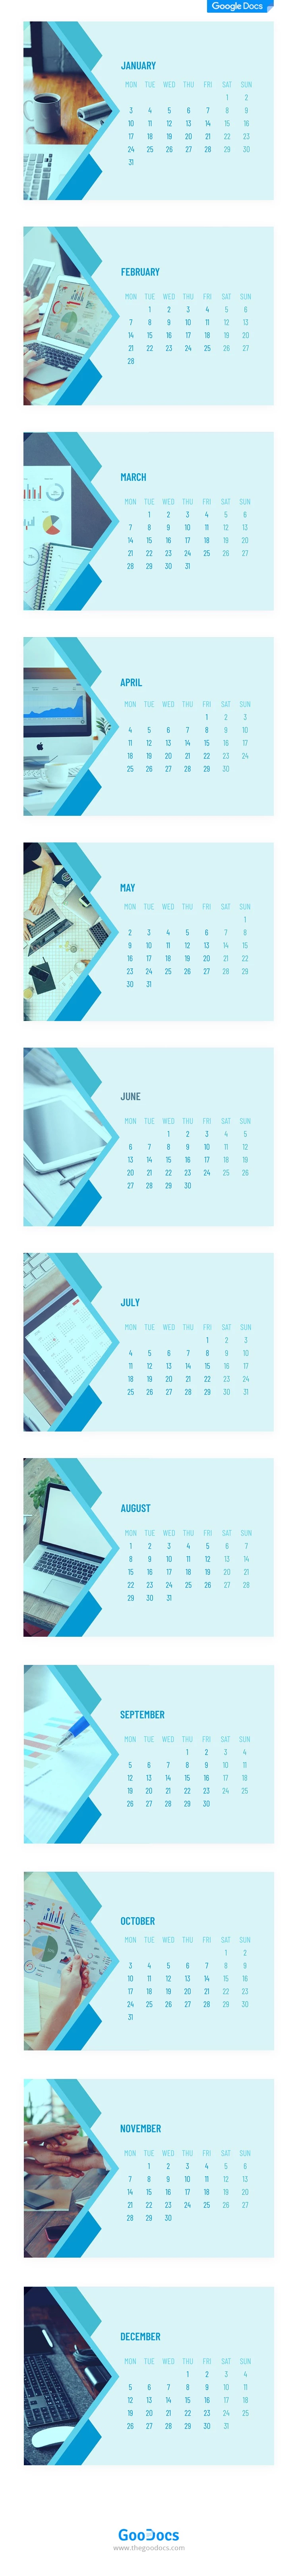 Calendario aziendale da scrivania stampabile - free Google Docs Template - 10062052